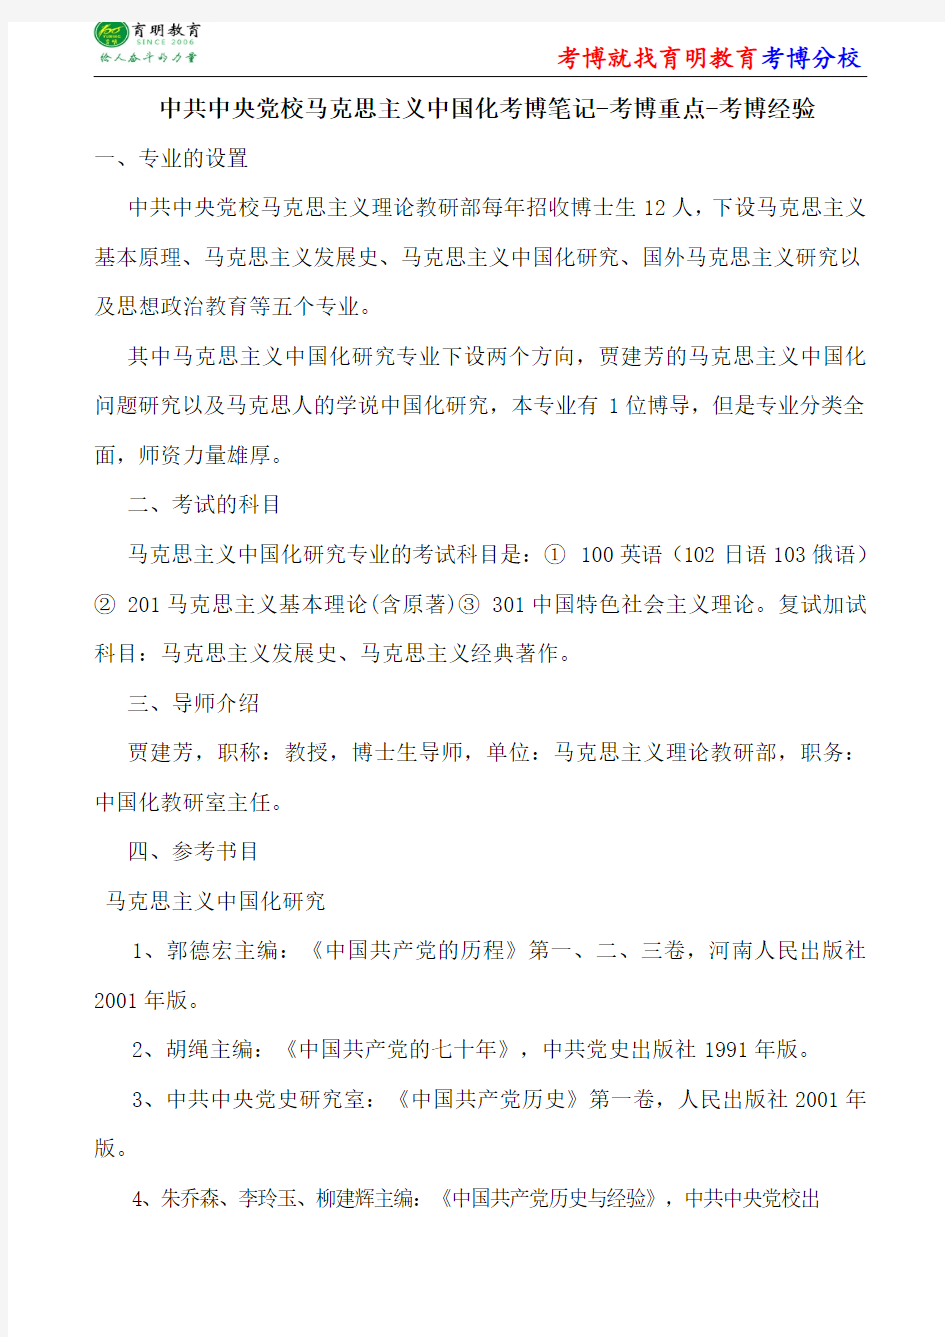 中共中央党校马克思主义中国化考博笔记-考博重点-考博经验